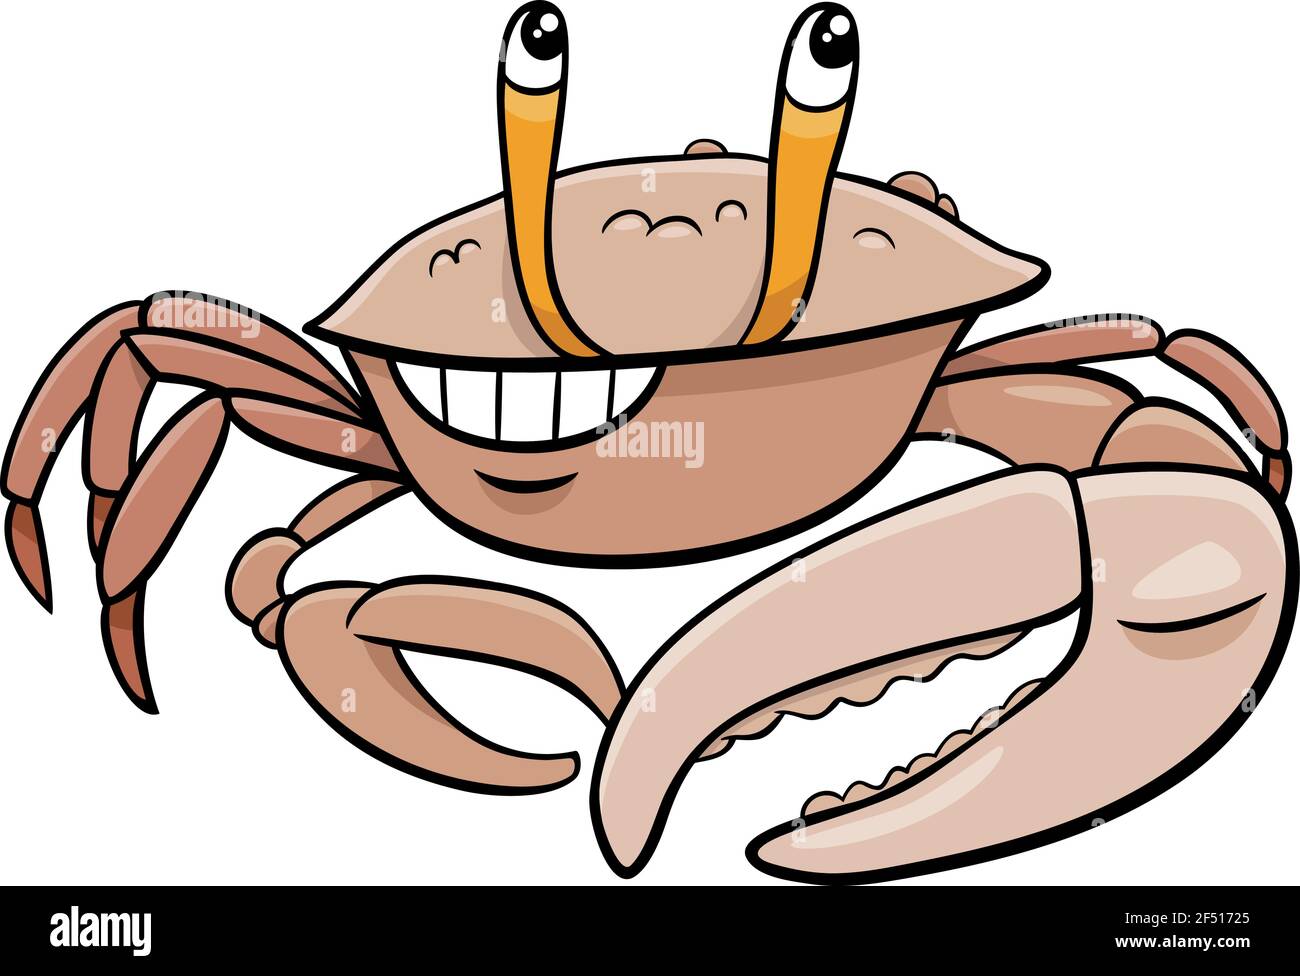 Illustration de dessin animé du personnage animal drôle de crabe de violon Illustration de Vecteur